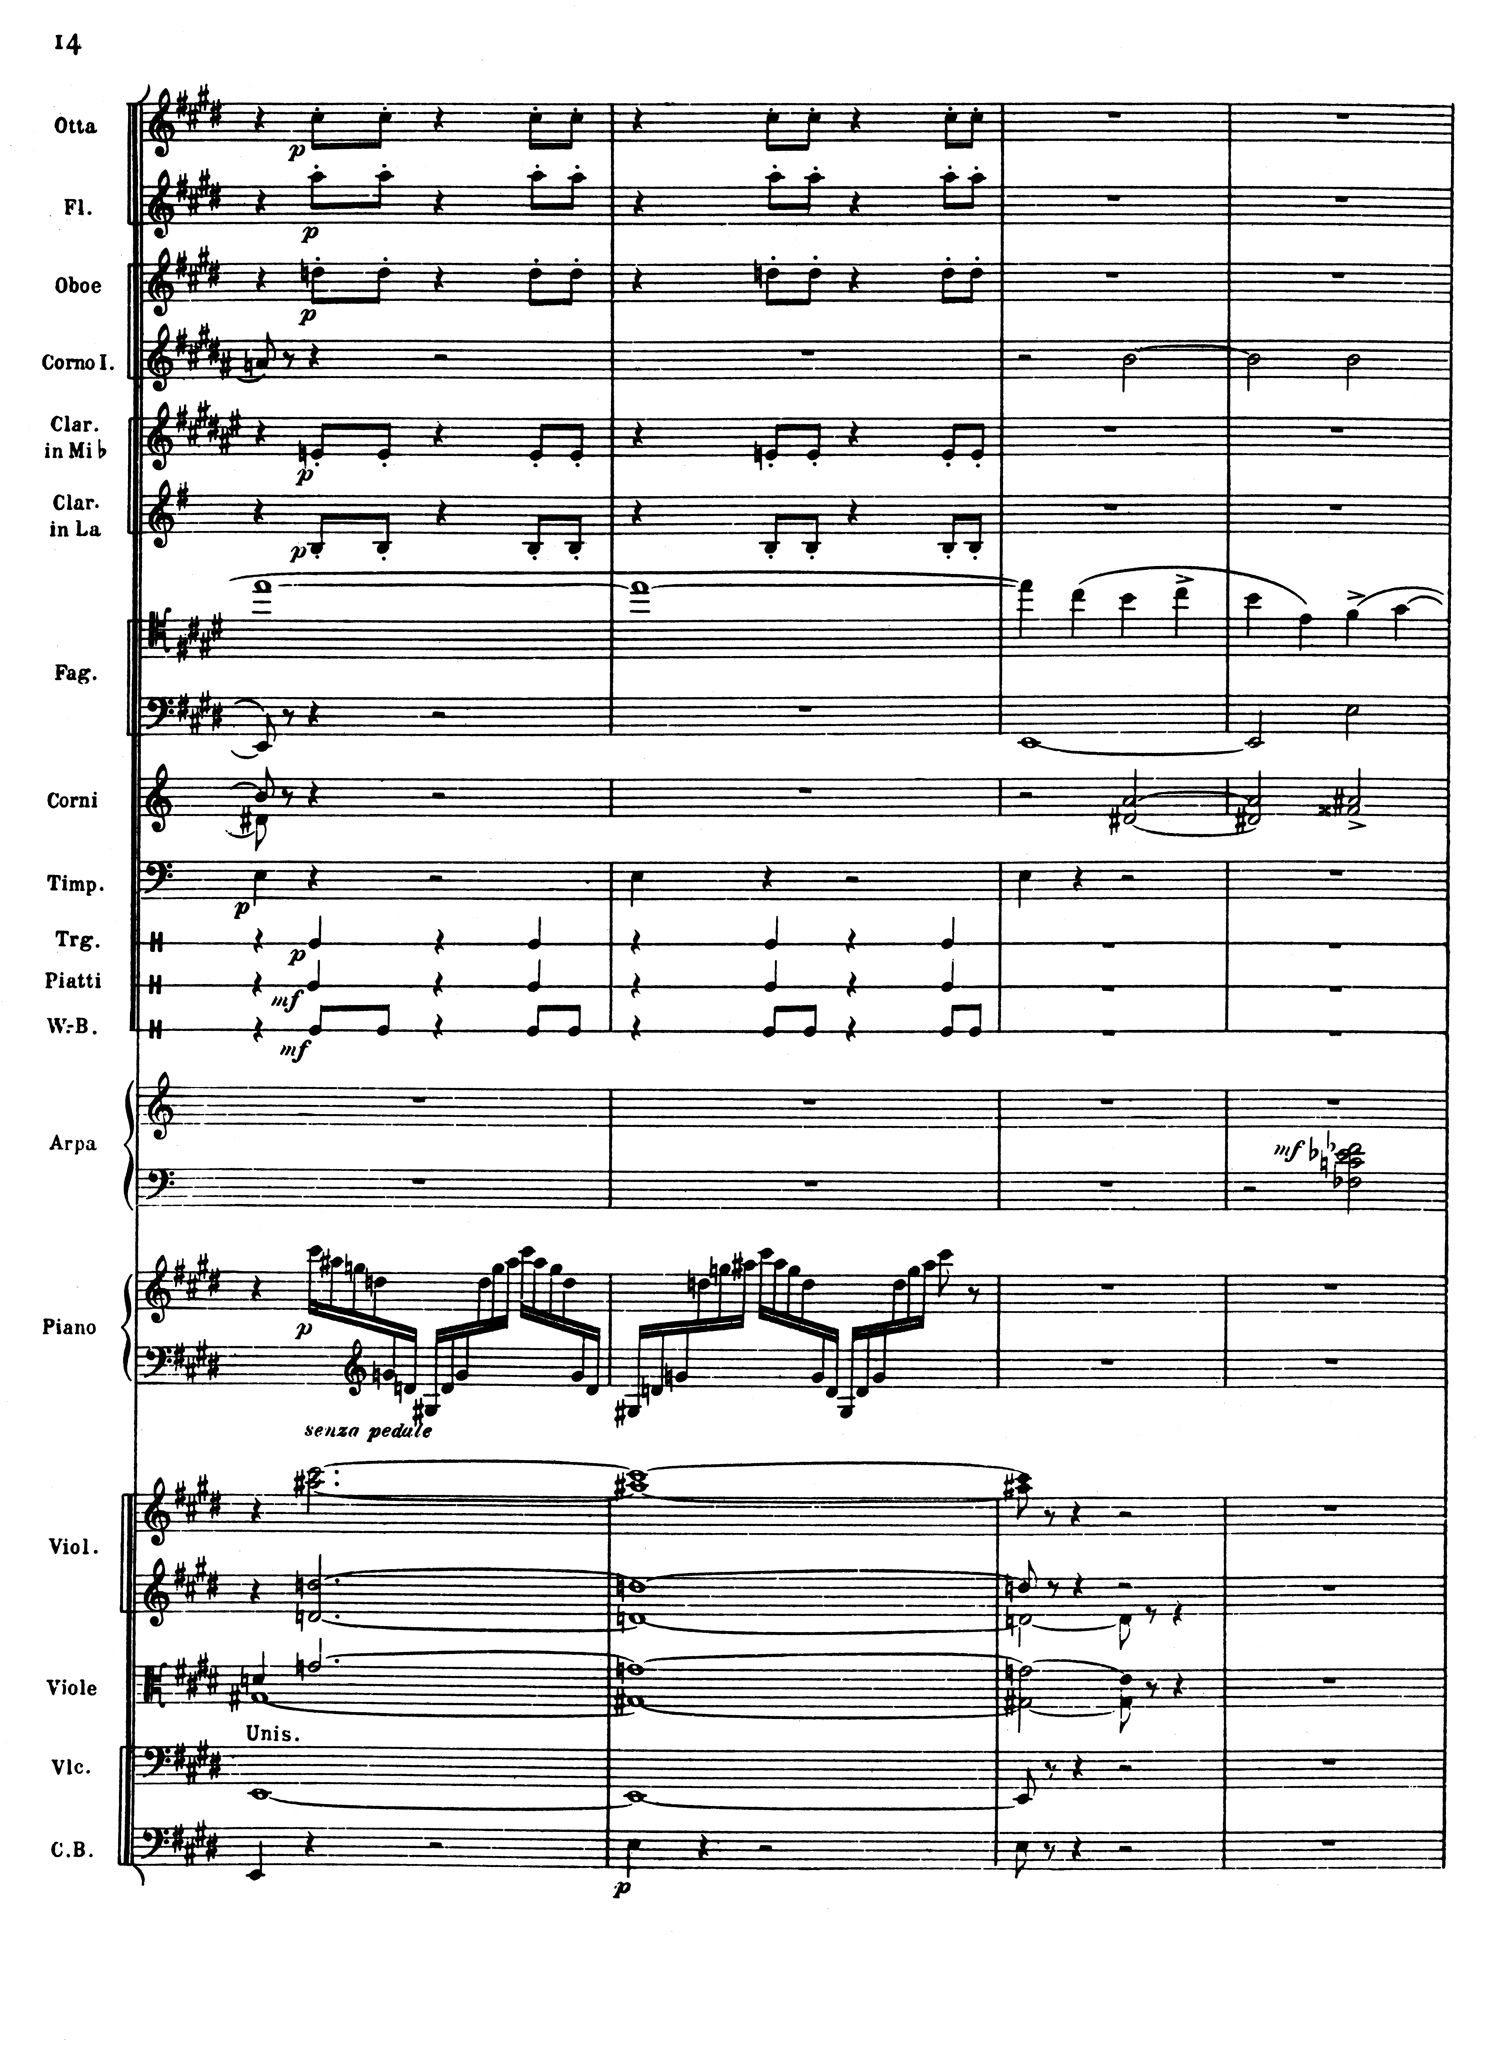 Ravel Piano Mvt 1 Score 2.jpg